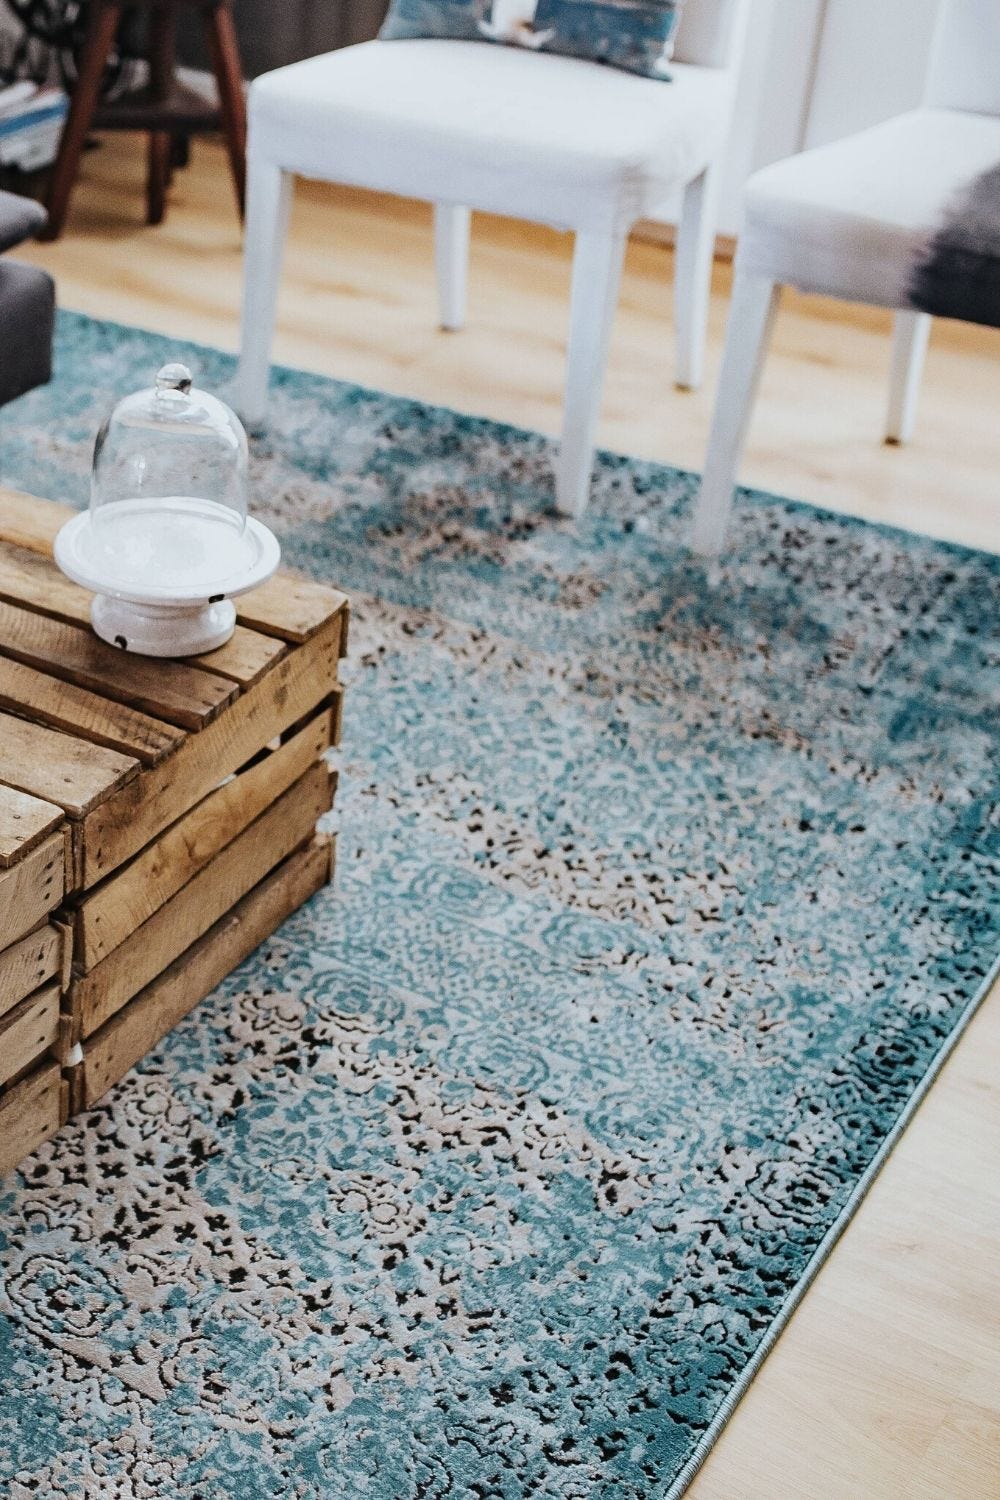 Area rug for fall decor- Fall decor ideas 2020